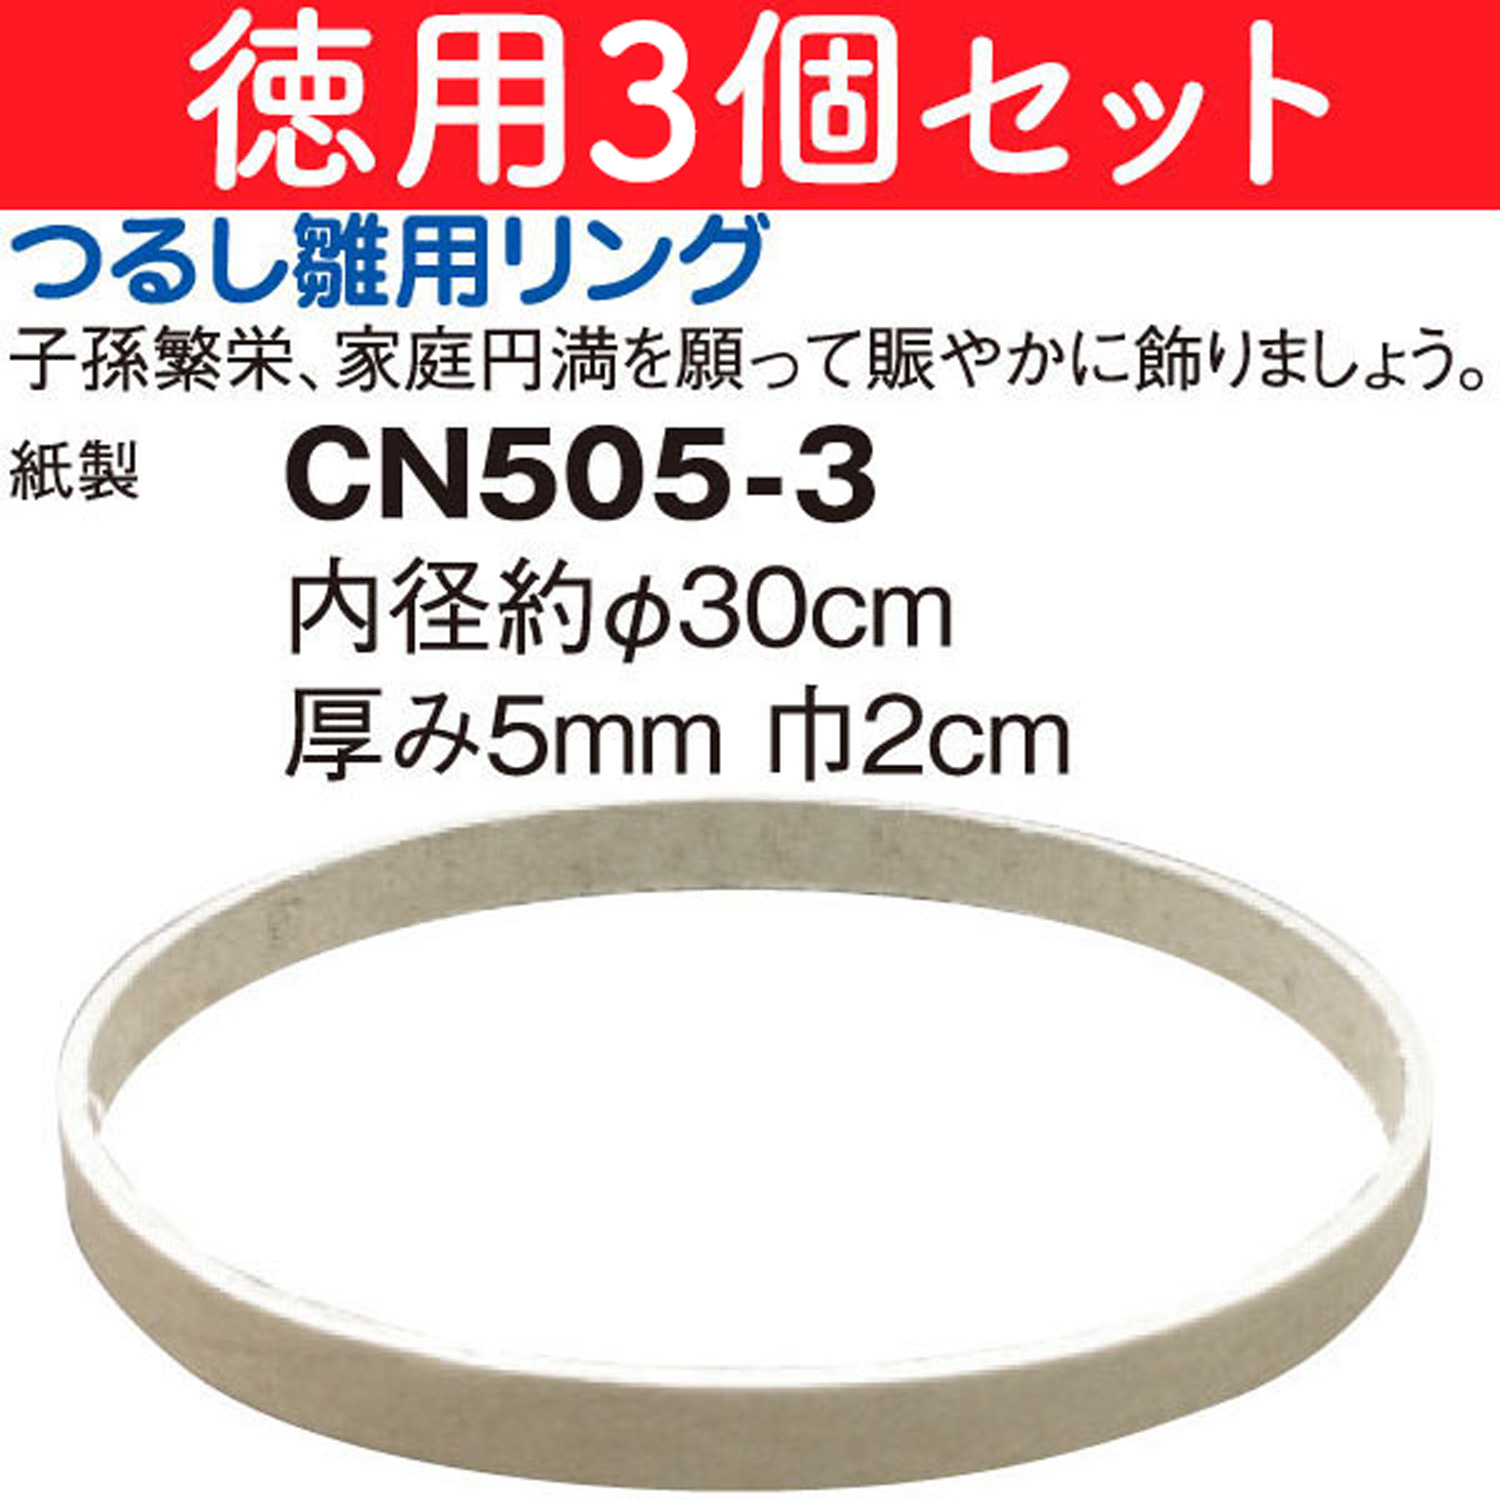 CN505-3 特)徳用つるし雛用リング 3個 (袋)